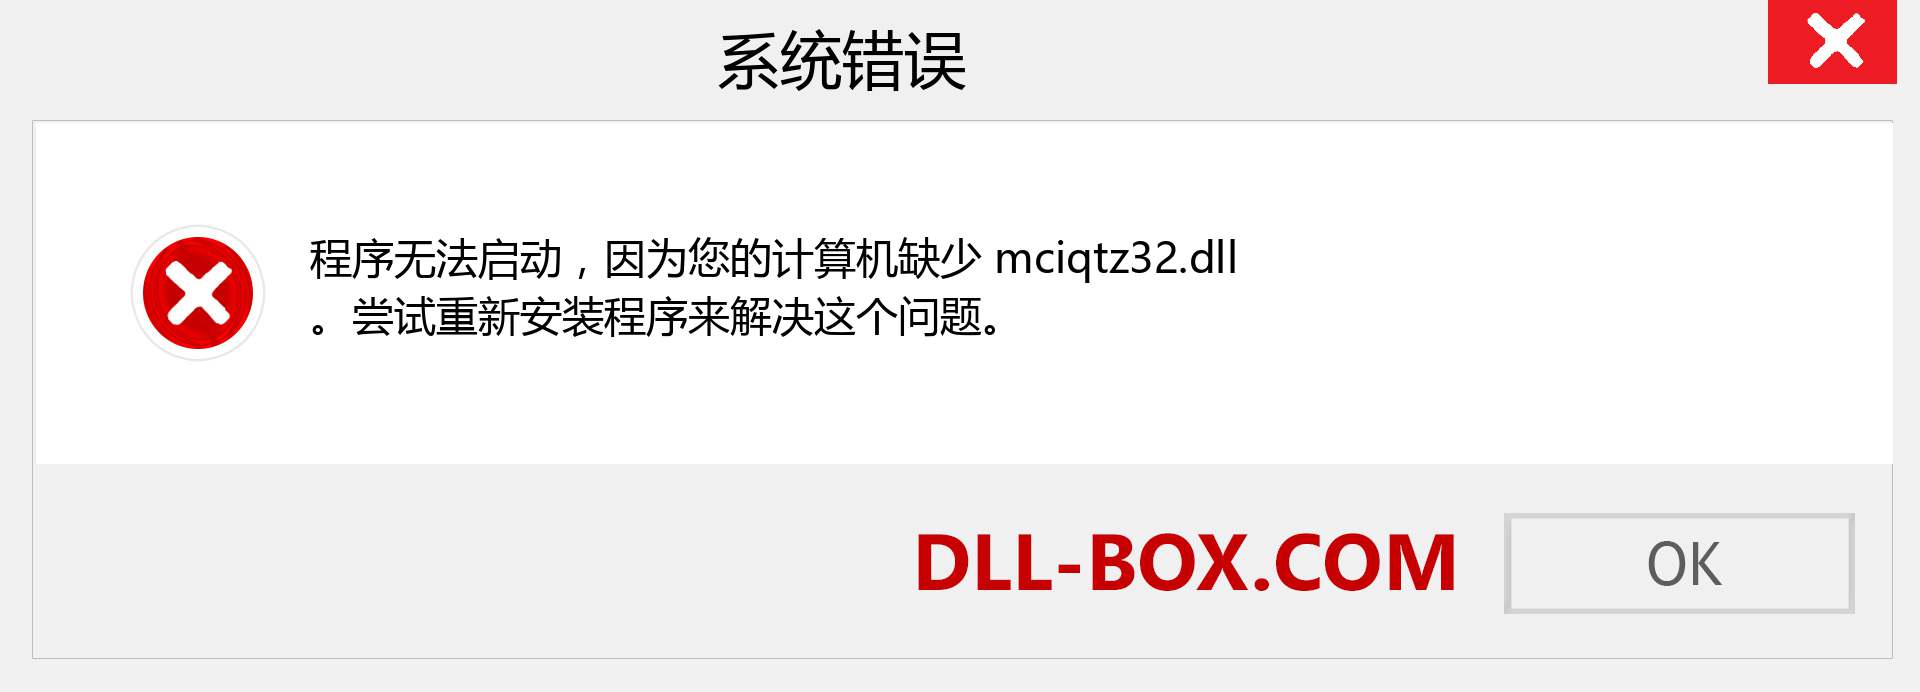 mciqtz32.dll 文件丢失？。 适用于 Windows 7、8、10 的下载 - 修复 Windows、照片、图像上的 mciqtz32 dll 丢失错误